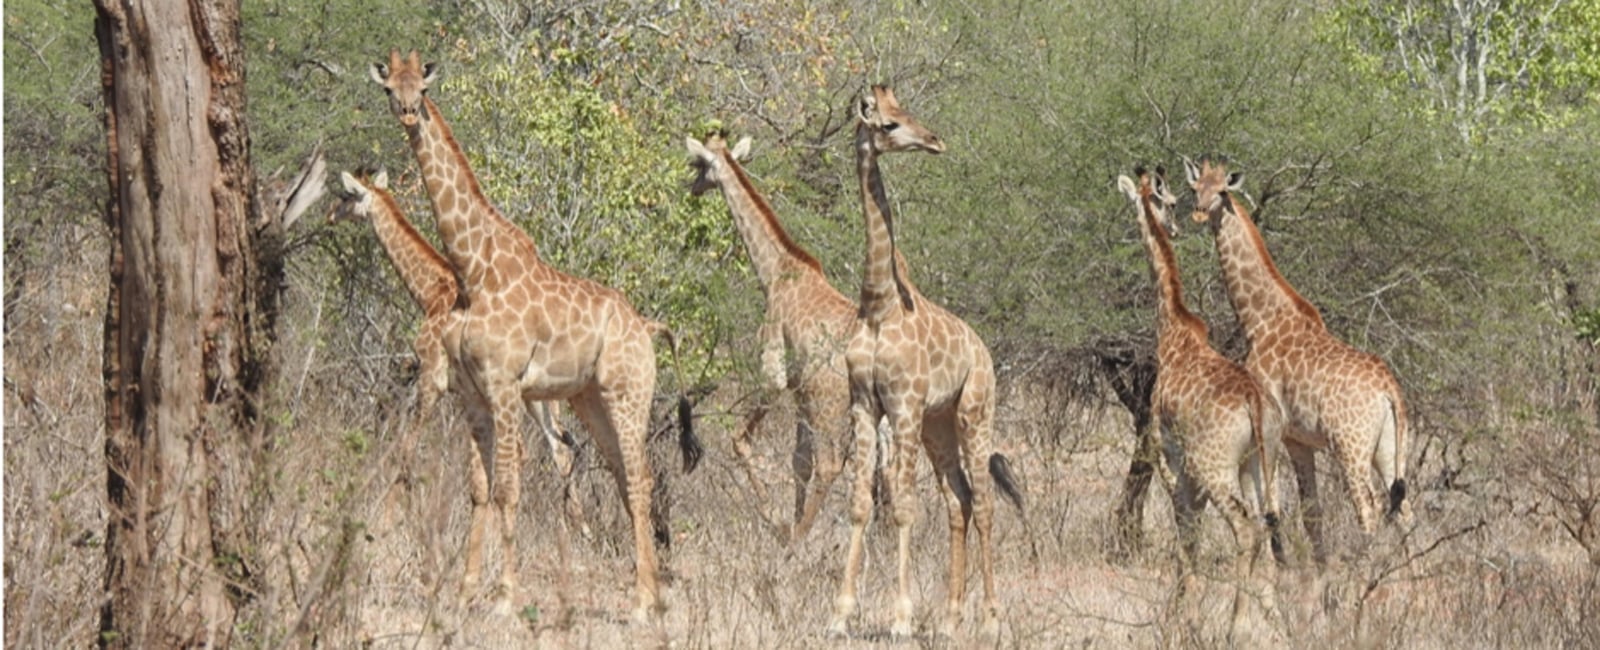 Malawi Gains New Giraffe Population